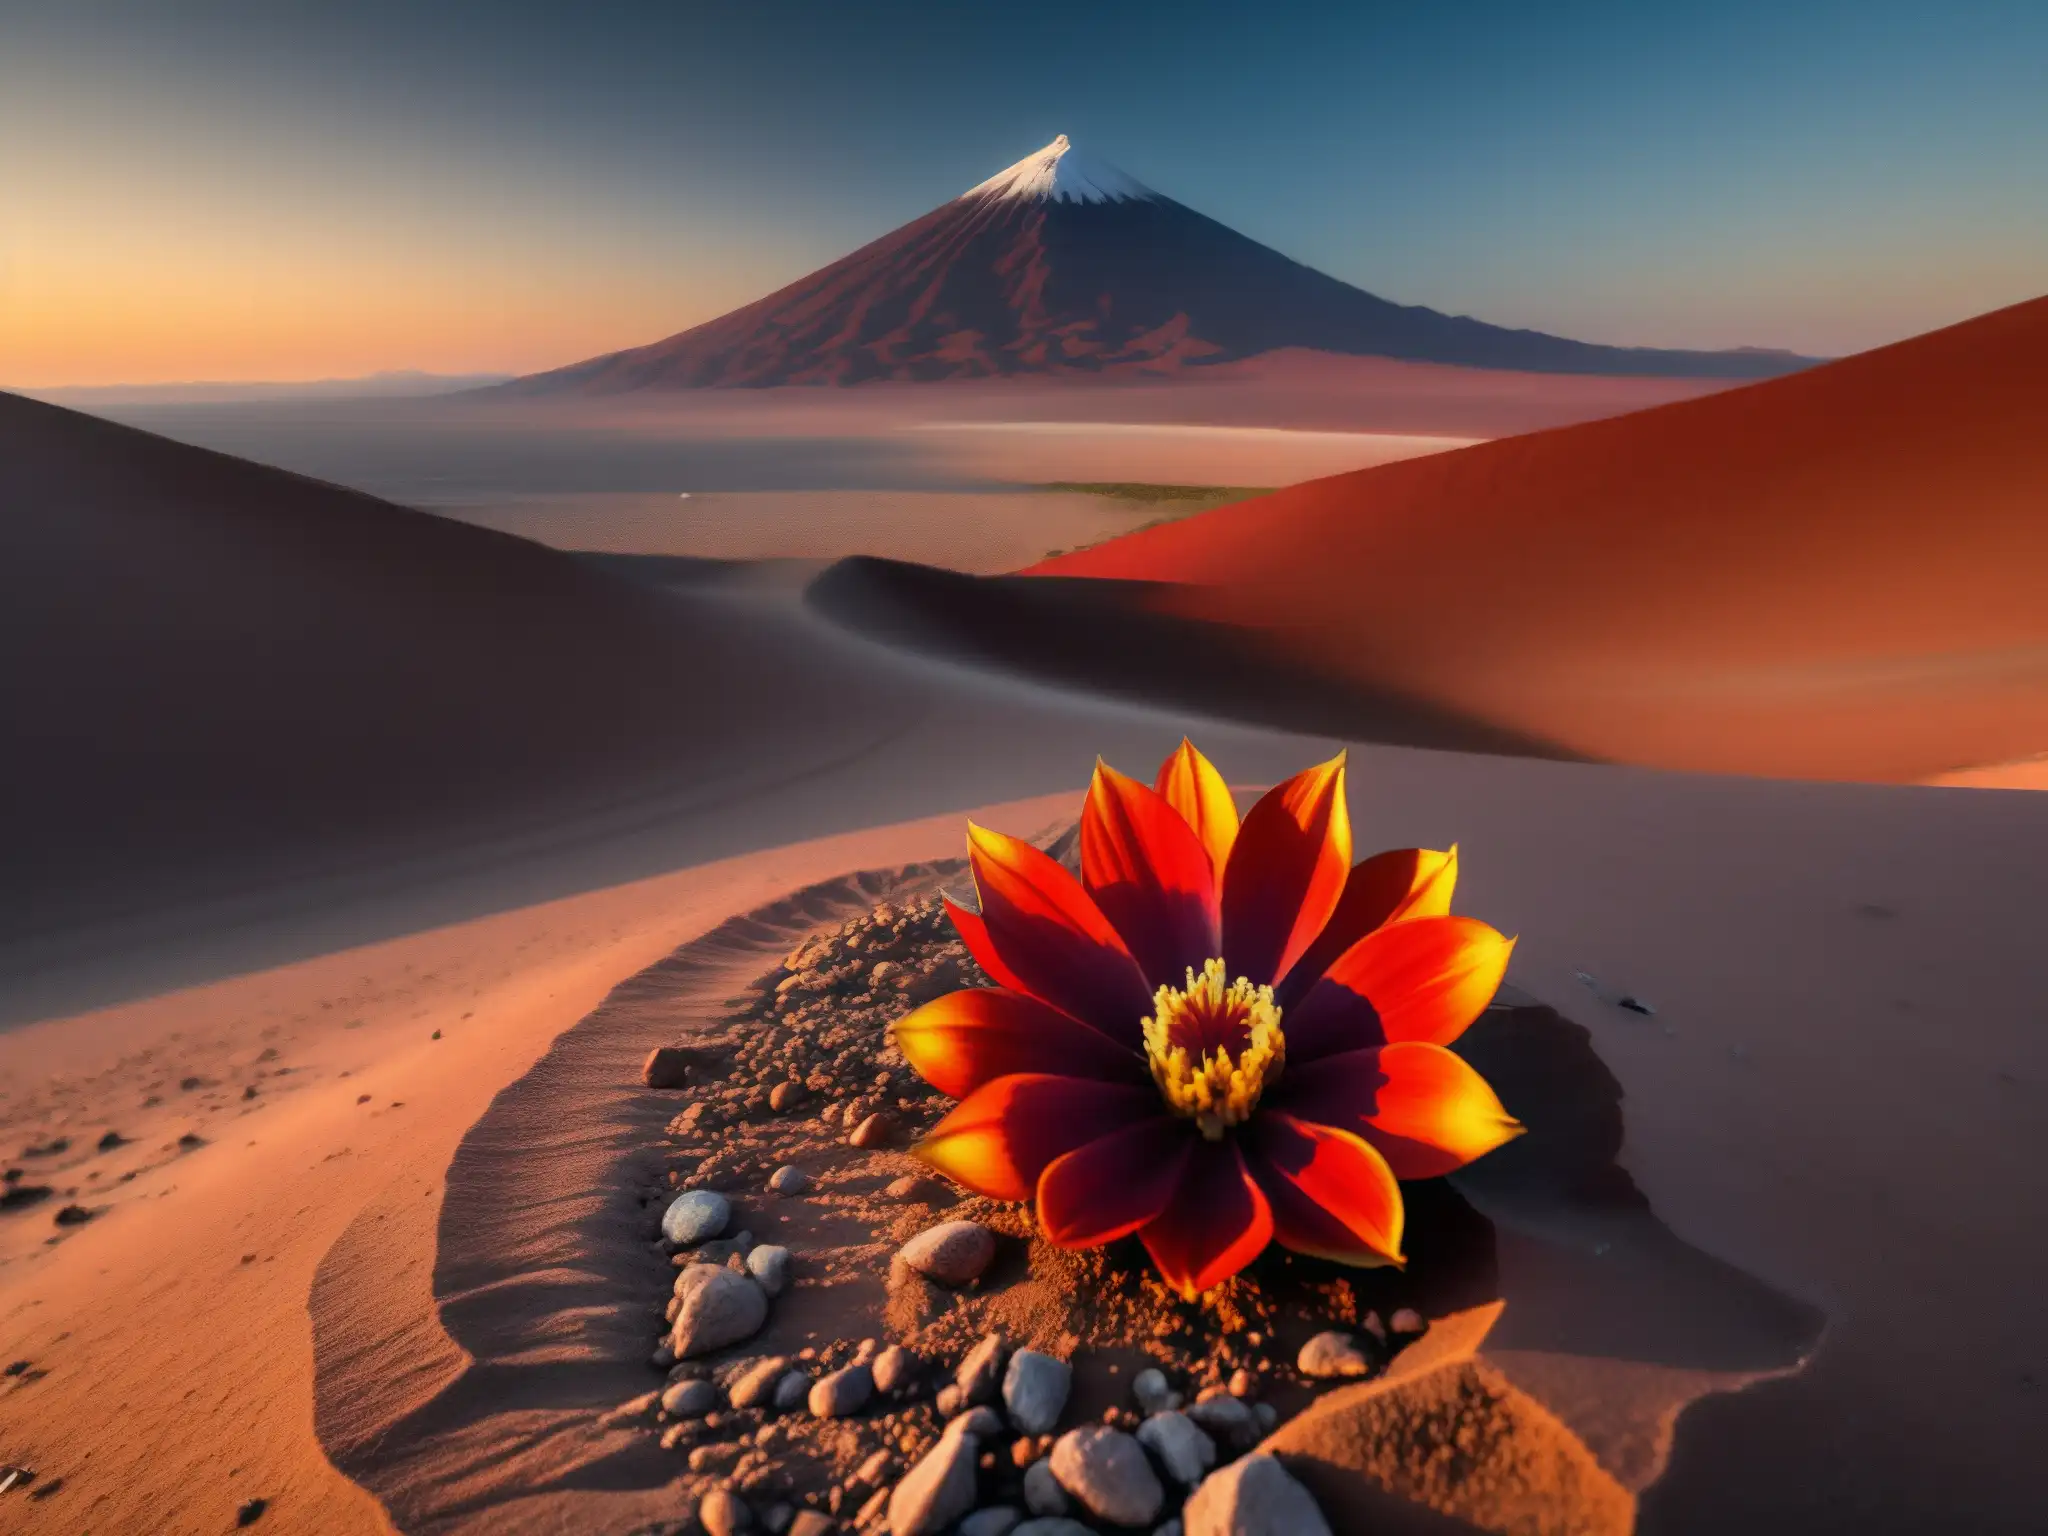 Espectacular puesta de sol en el desierto de Atacama con la leyenda de la Añañuca en primer plano, evocando misterio y belleza